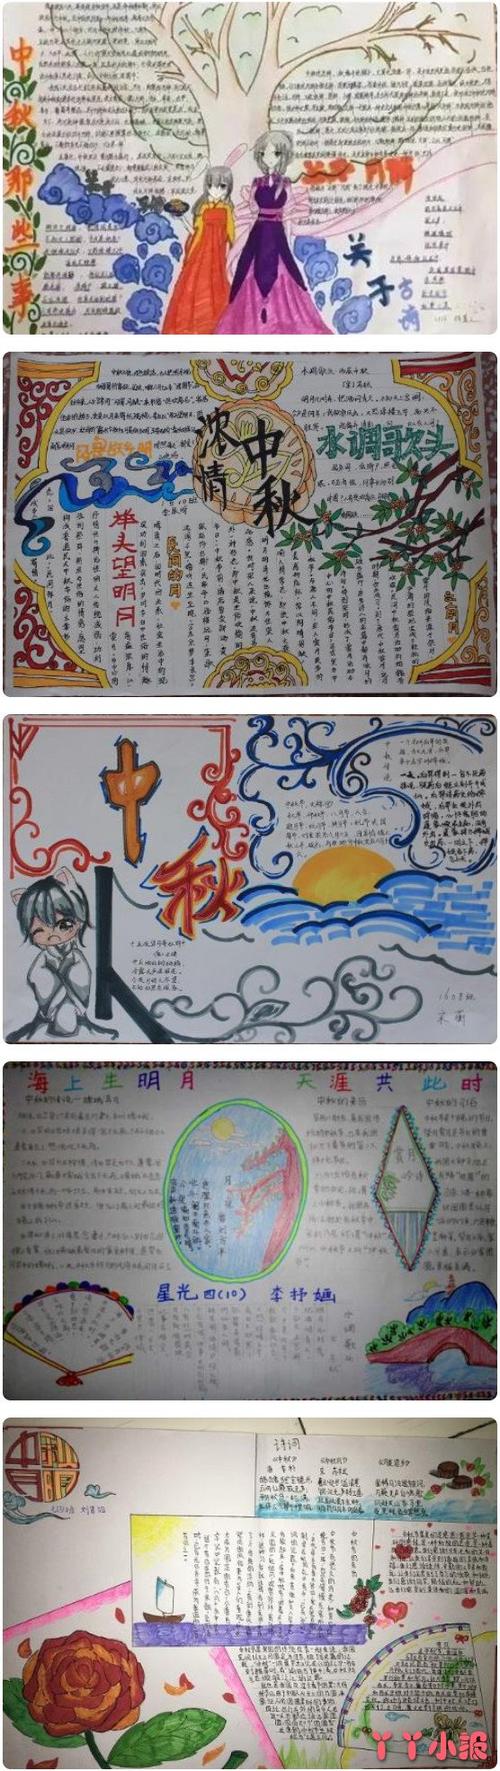 好看的中秋节的手抄报模板图喜欢的小朋友们可以简单的参考一些我们